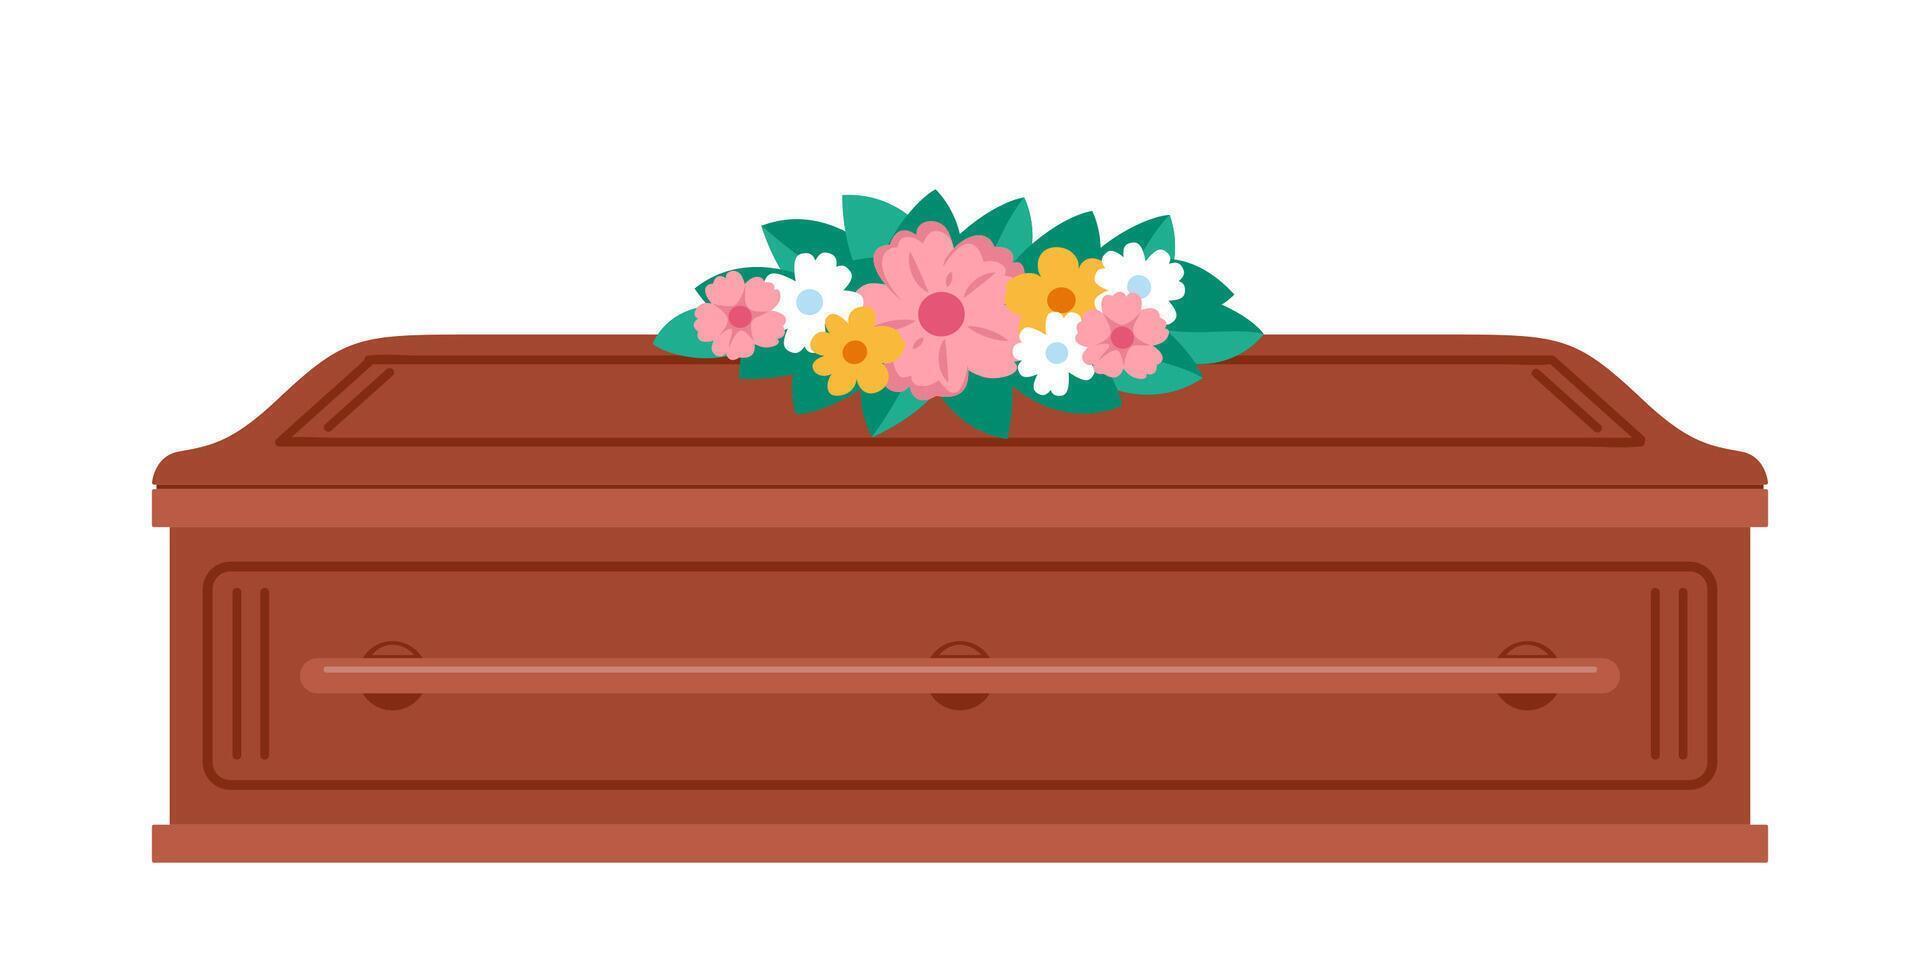 cercueil avec fleurs sur il. funérailles, deuil tradition. enterrement la cérémonie de mort humain, fermé cercueil. rituel un service vecteur illustration.